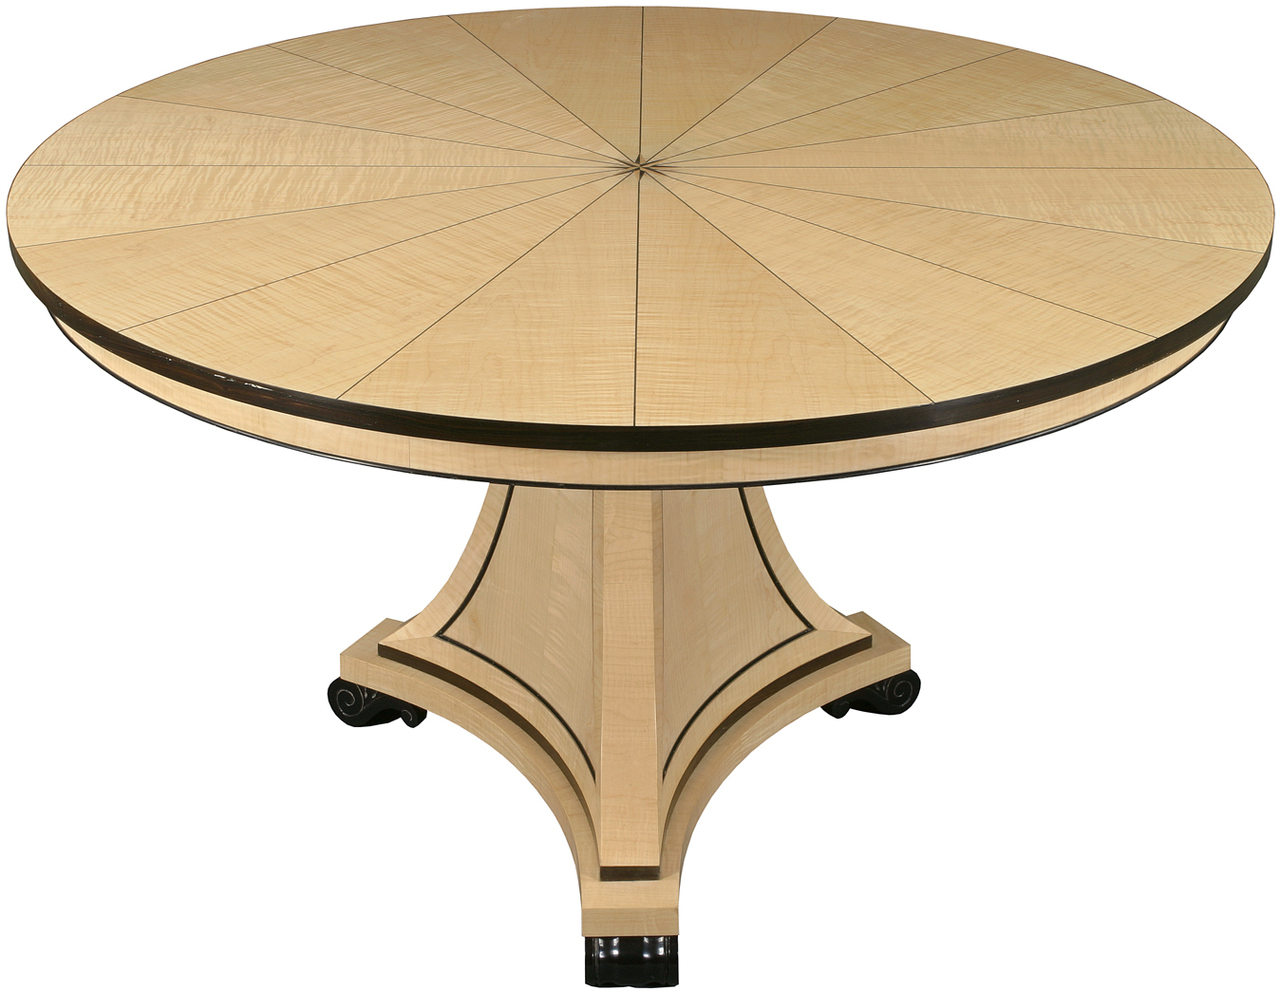 Стол круглый 1 м диаметр. Hoff круглый стол 110. Круглый стол 80 см раскладной. Деревянный раскладной круглый стол MT-2282. Круглый стол диаметр 80 см трансформер.